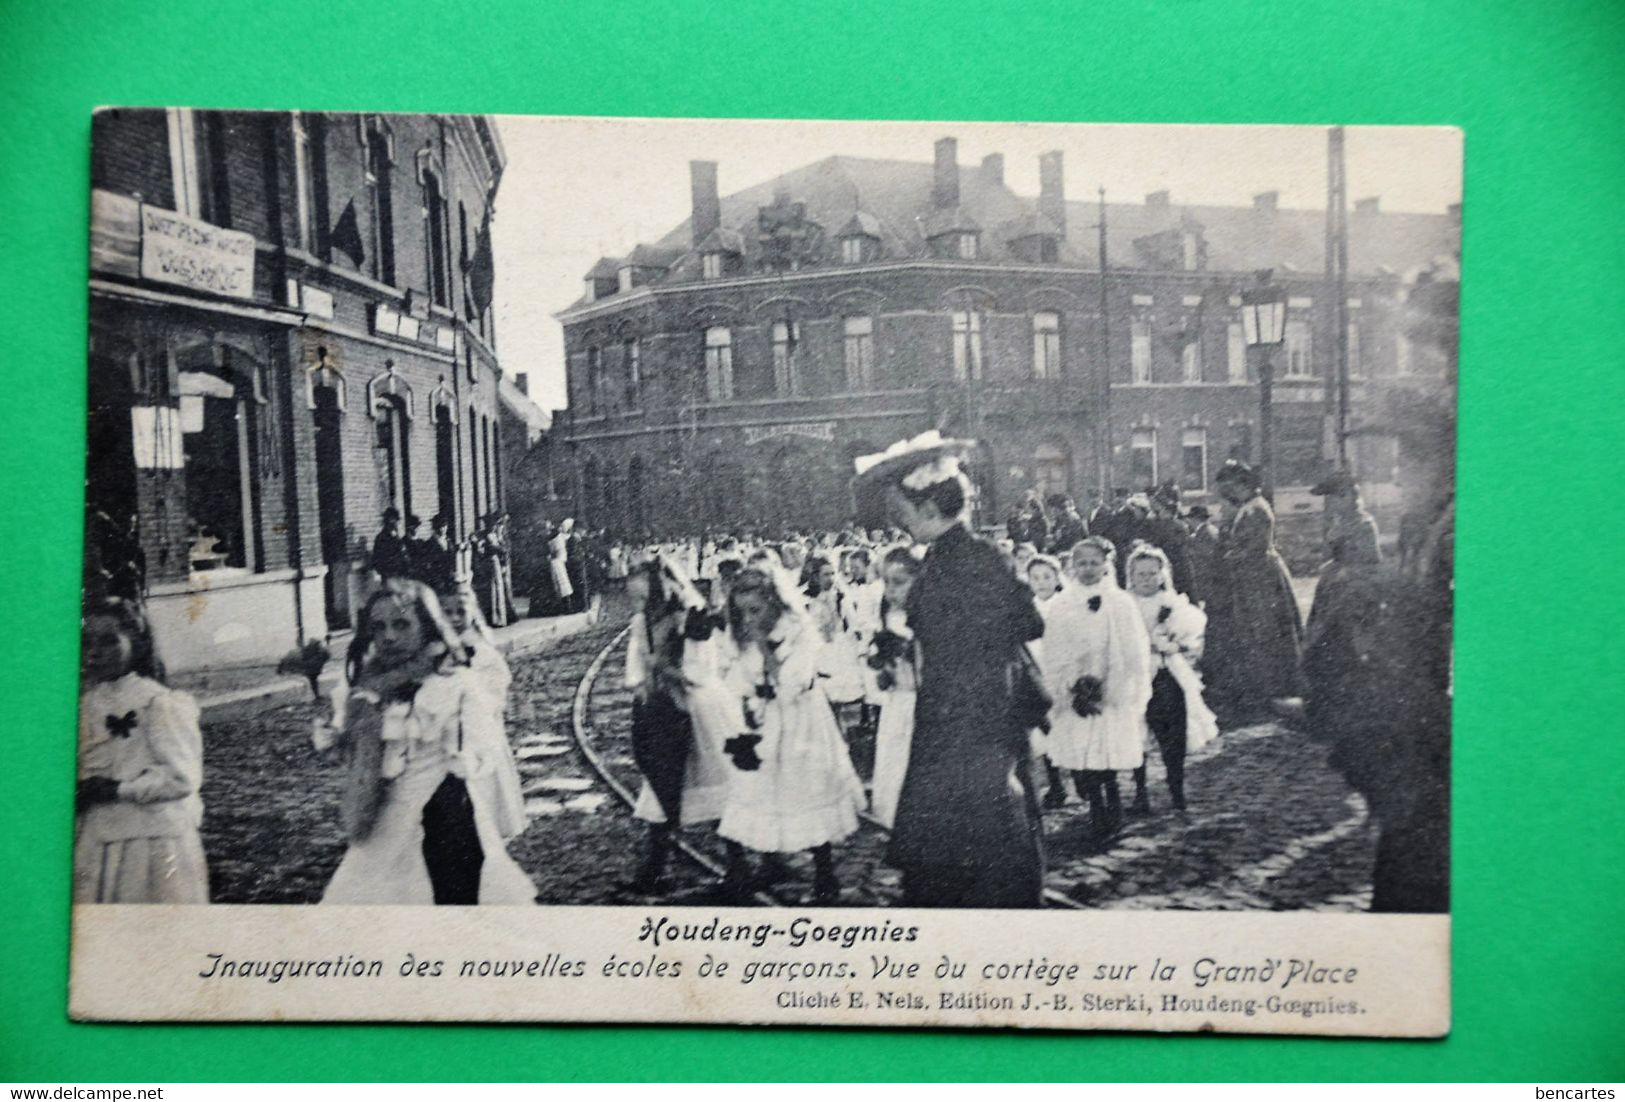 Houdeng-Goegnies 1910: Inauguration Des Nouvelles écoles Des Garçons. Vue Du Cortège De La Grand Place - La Louvière